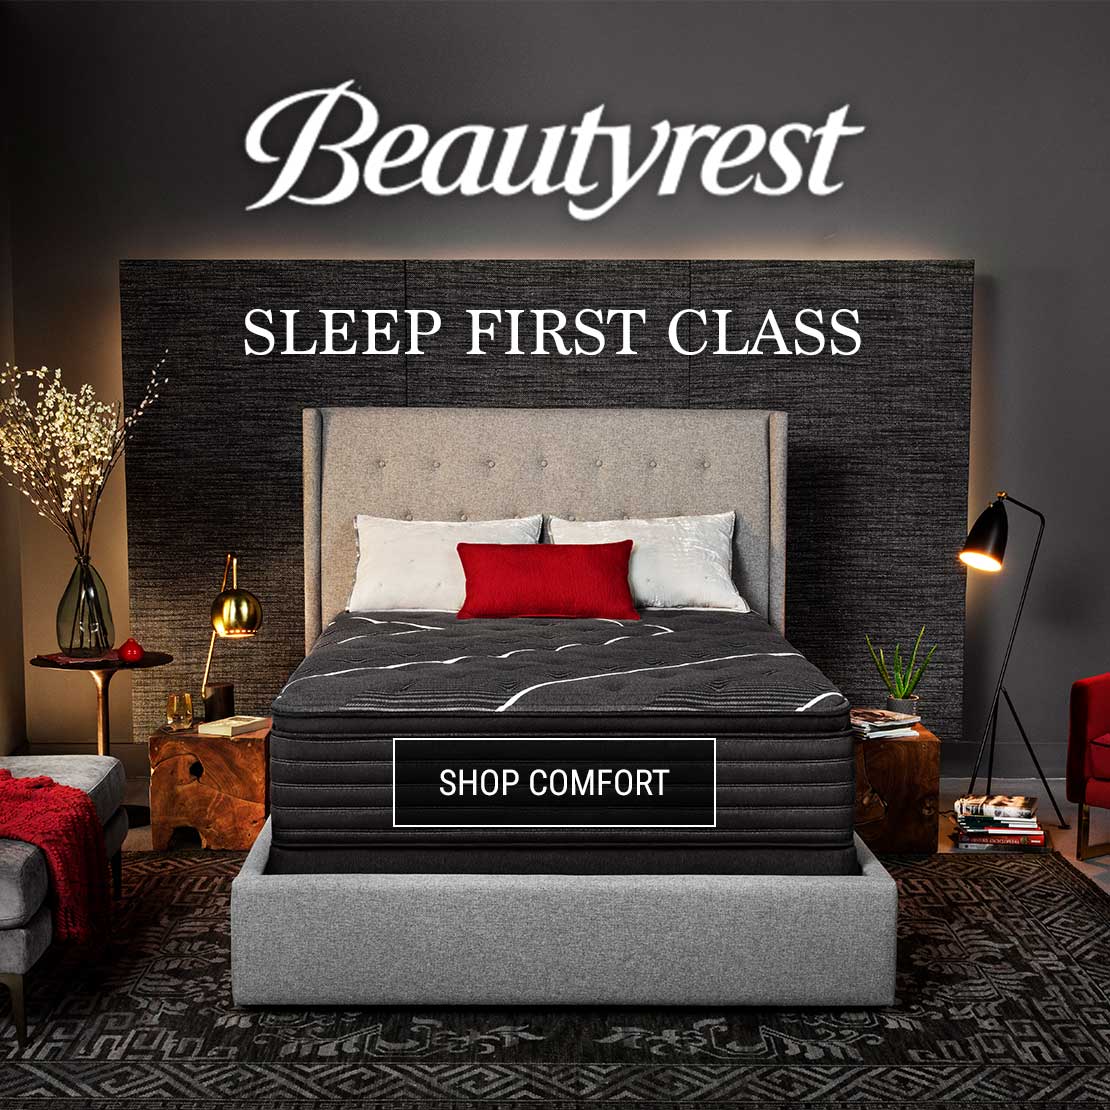 Sleep First Class with Beautyrest Mattresses